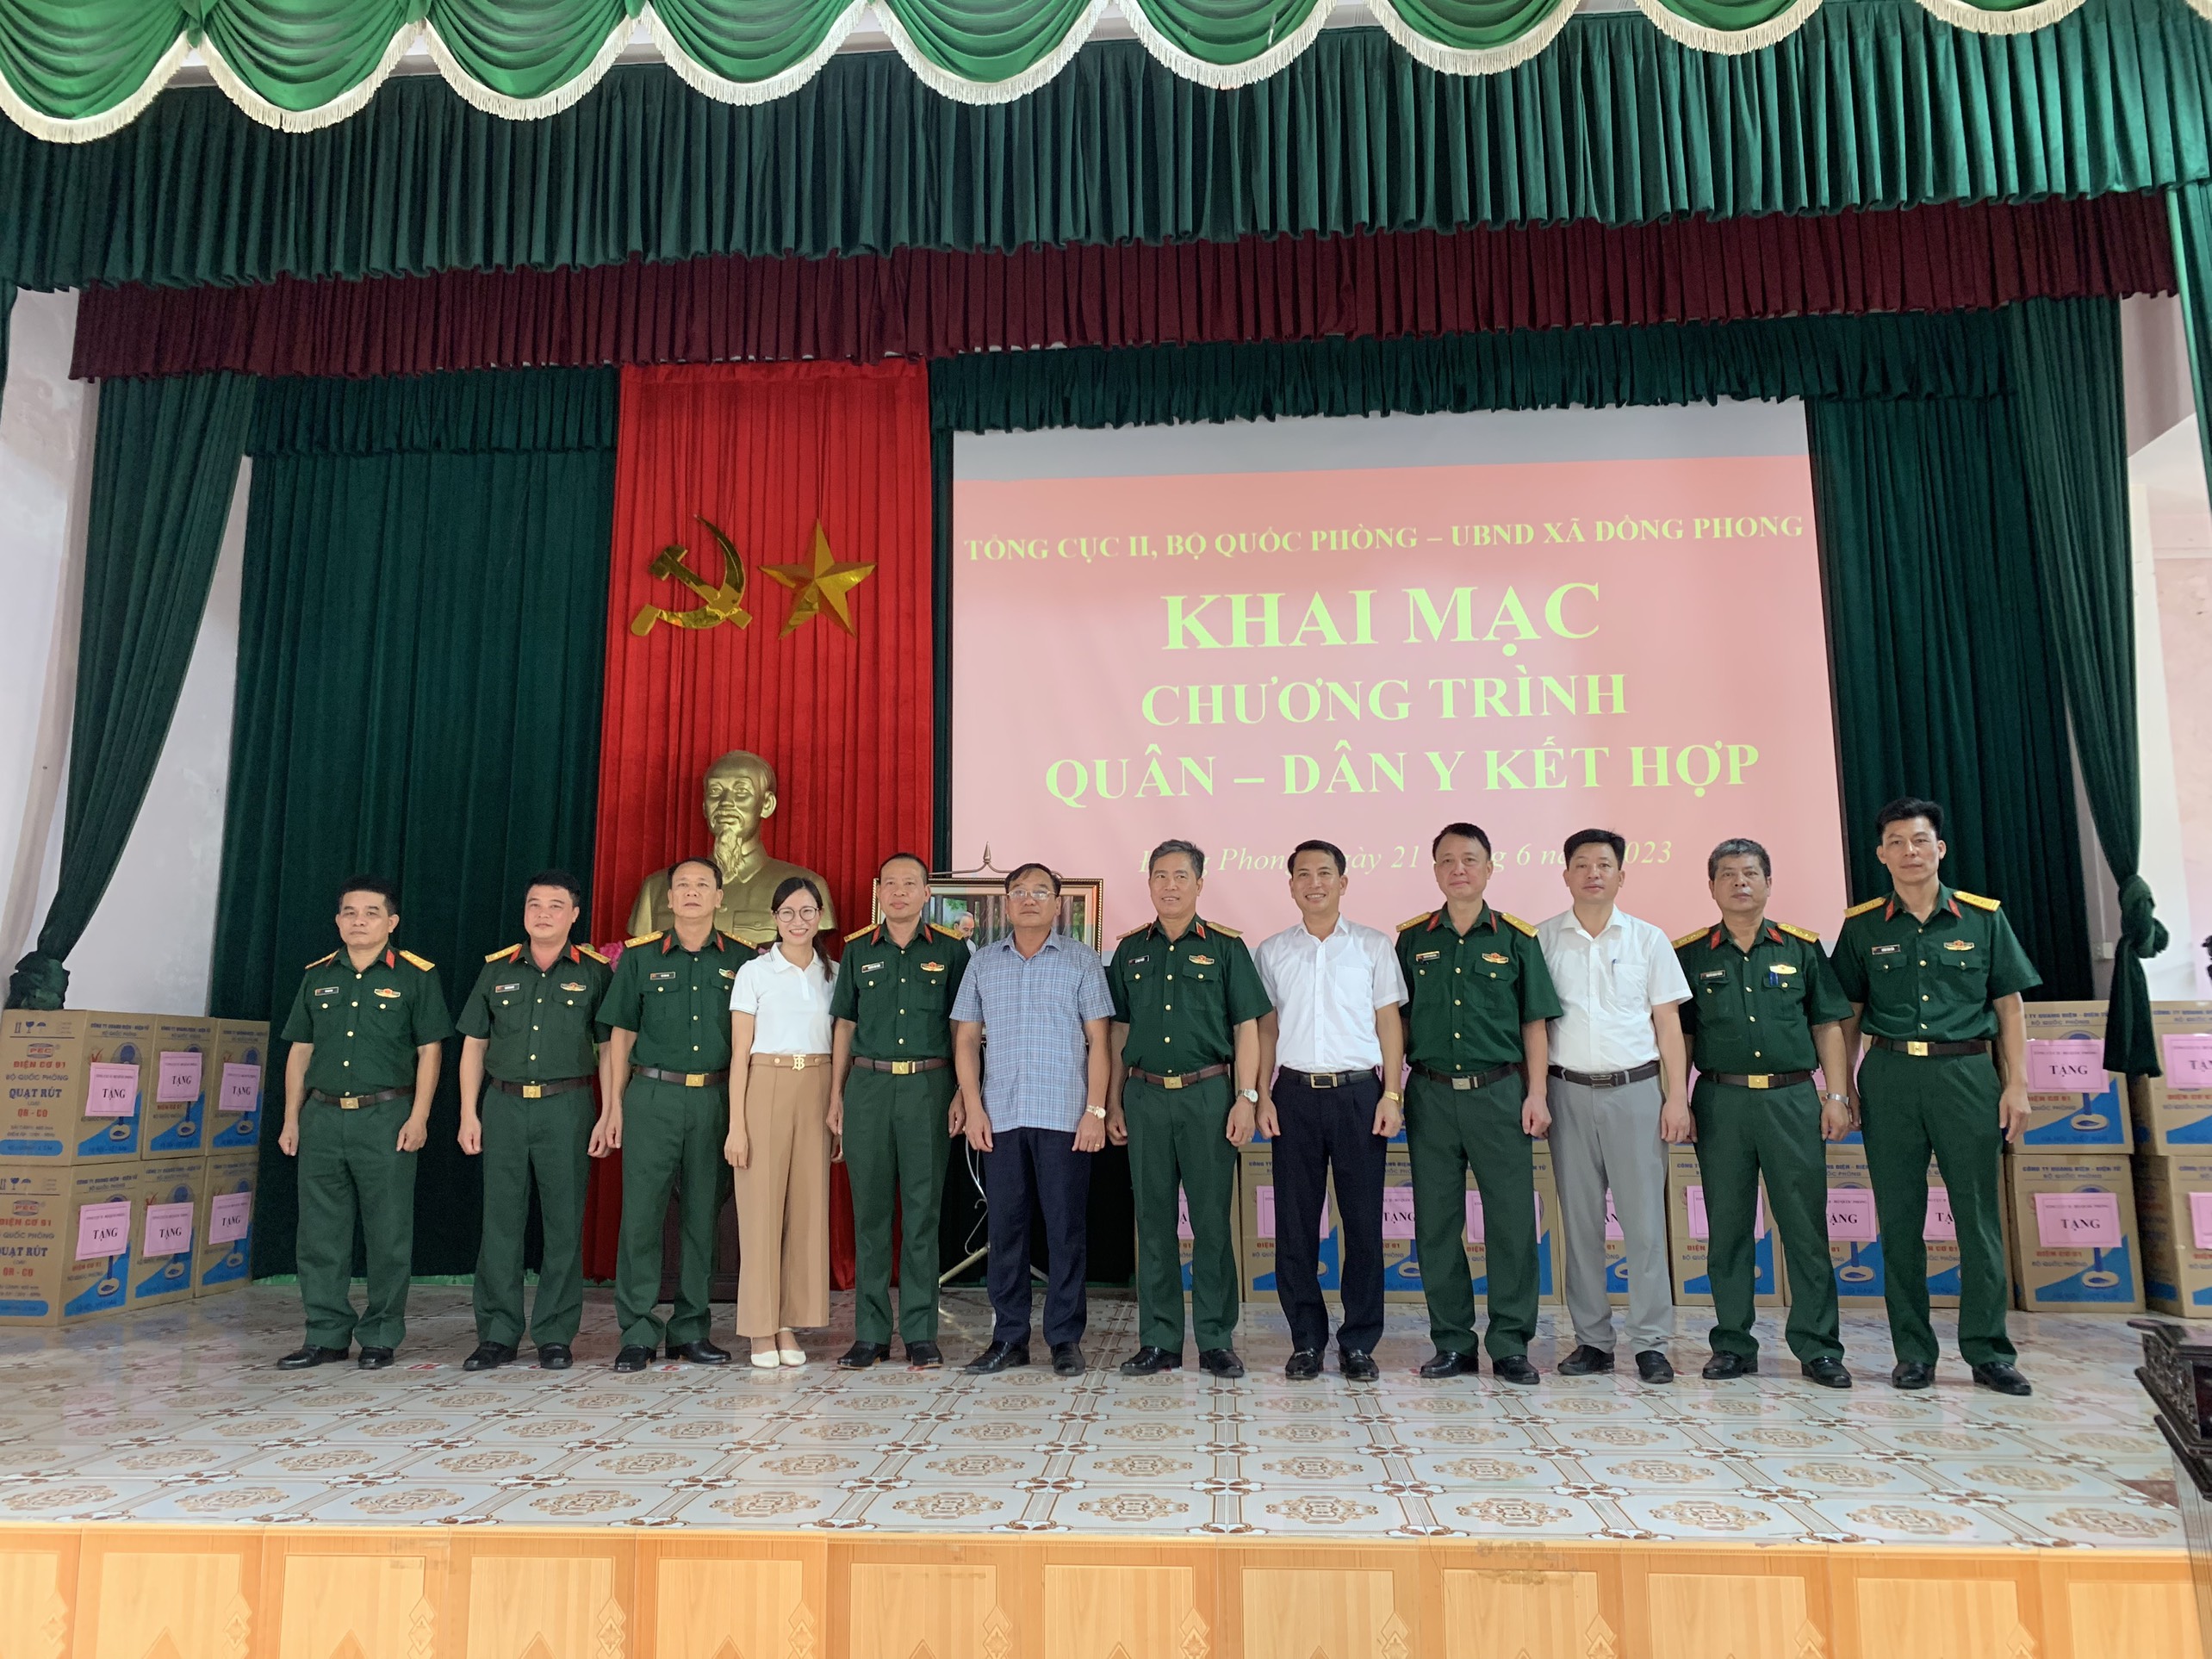 Chương trình Quân – Dân y kết hợp của Tổng cục II, Bộ Quốc Phòng  tại xã Đồng Phong